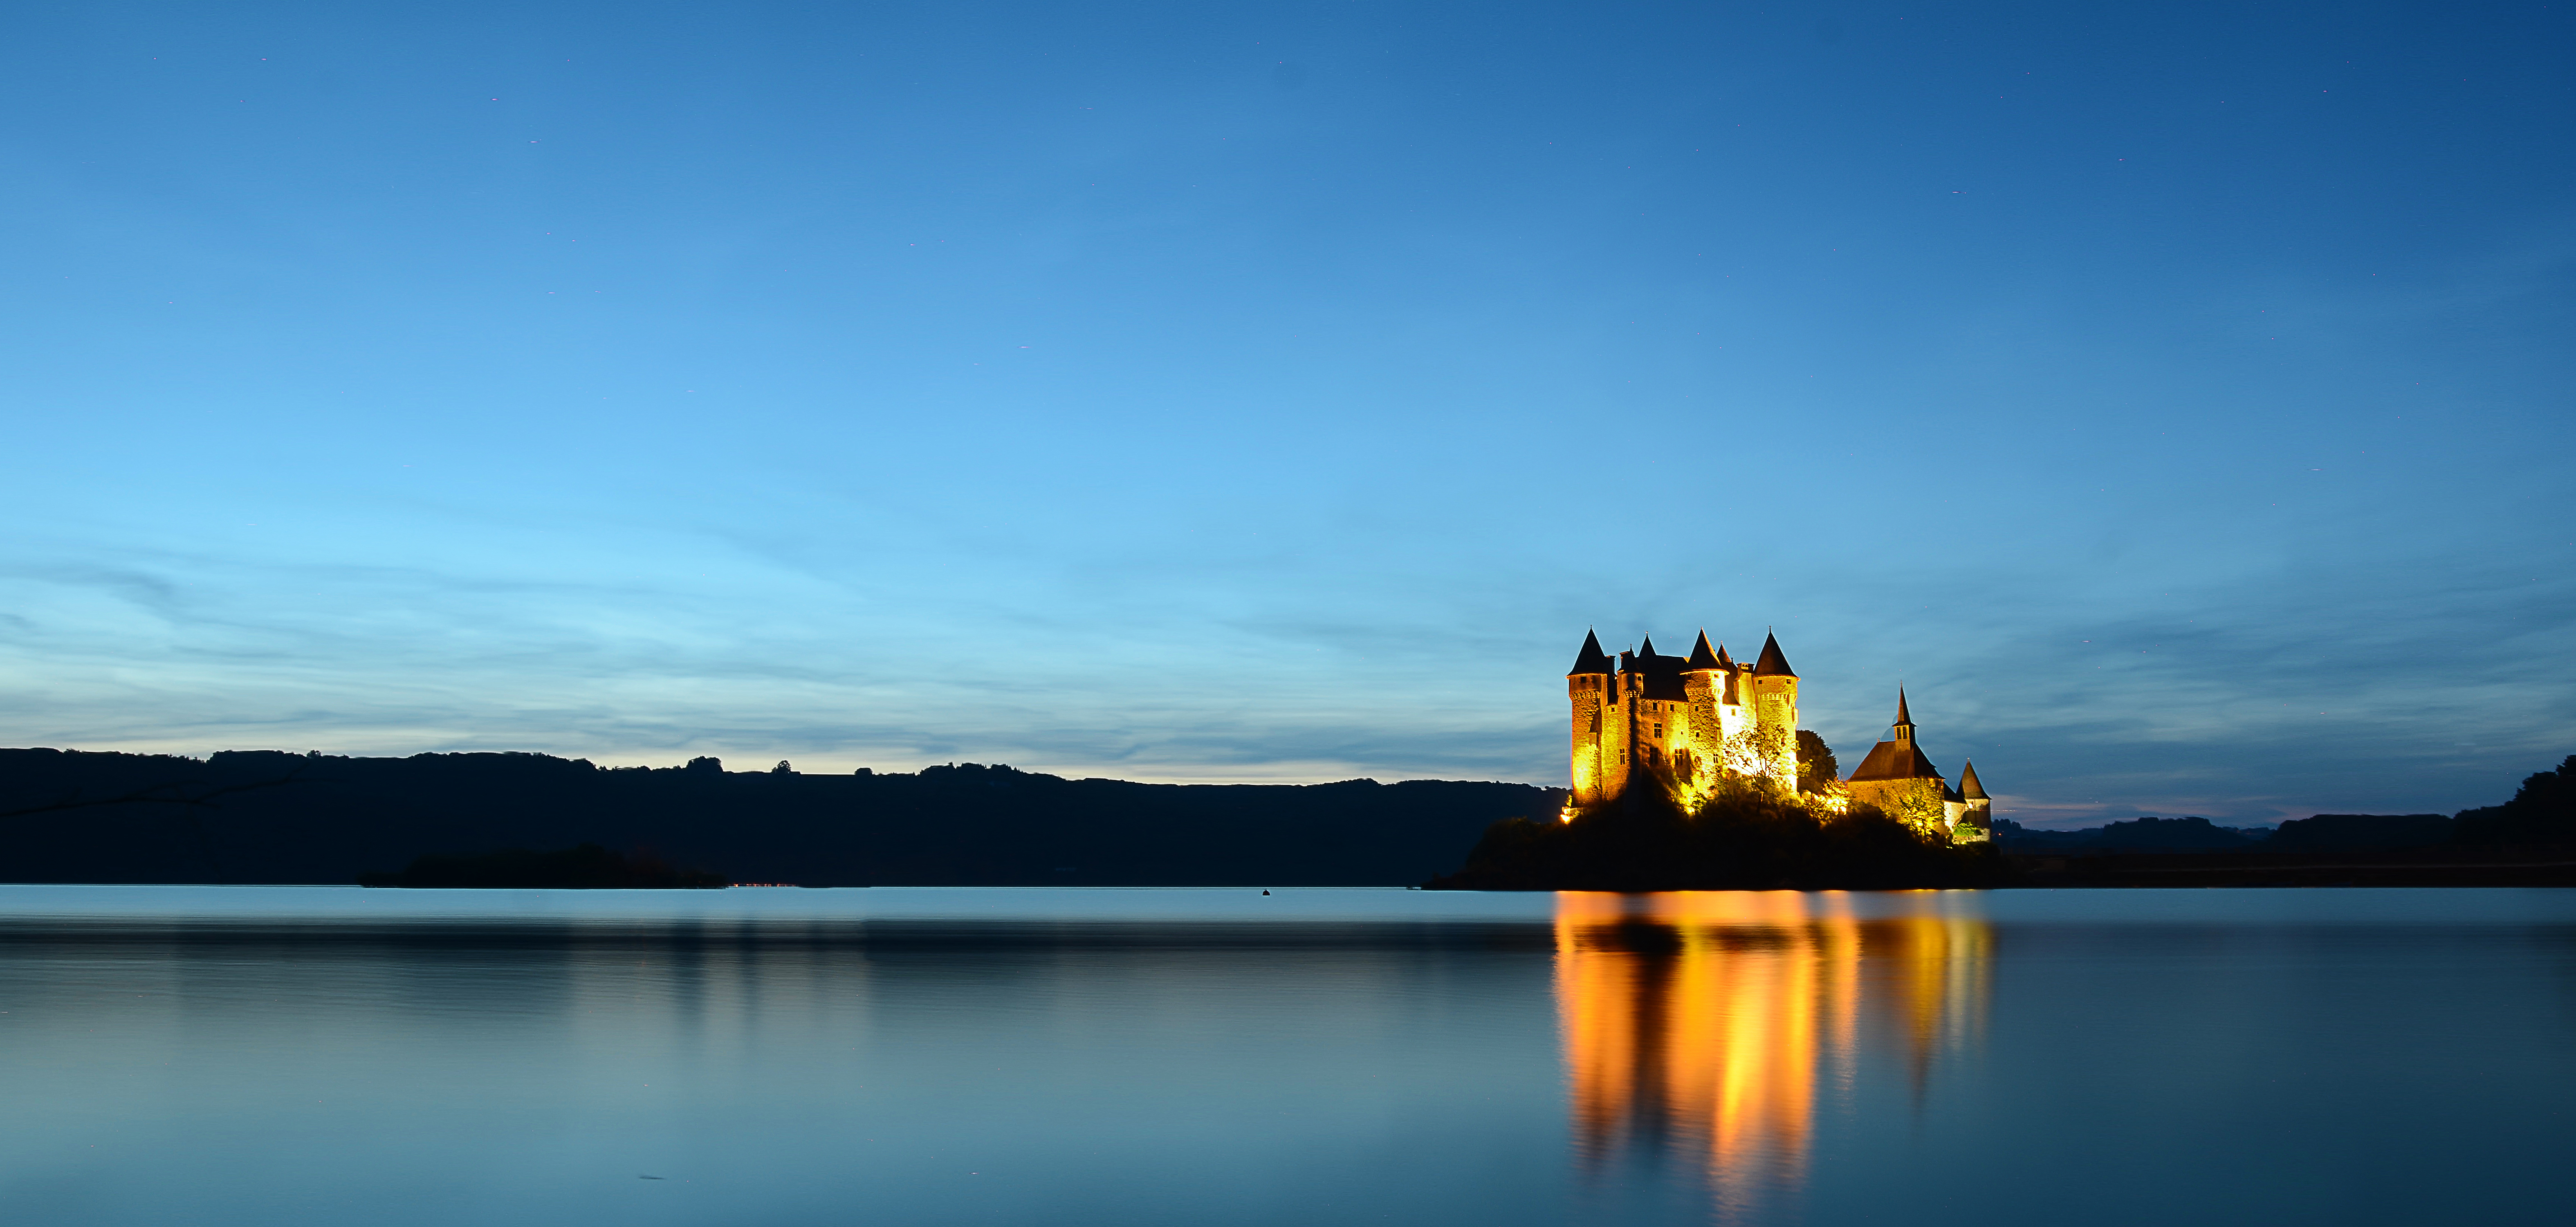 Vue nocturne d'un lac avec un château illuminé qui se reflète dans l'eau